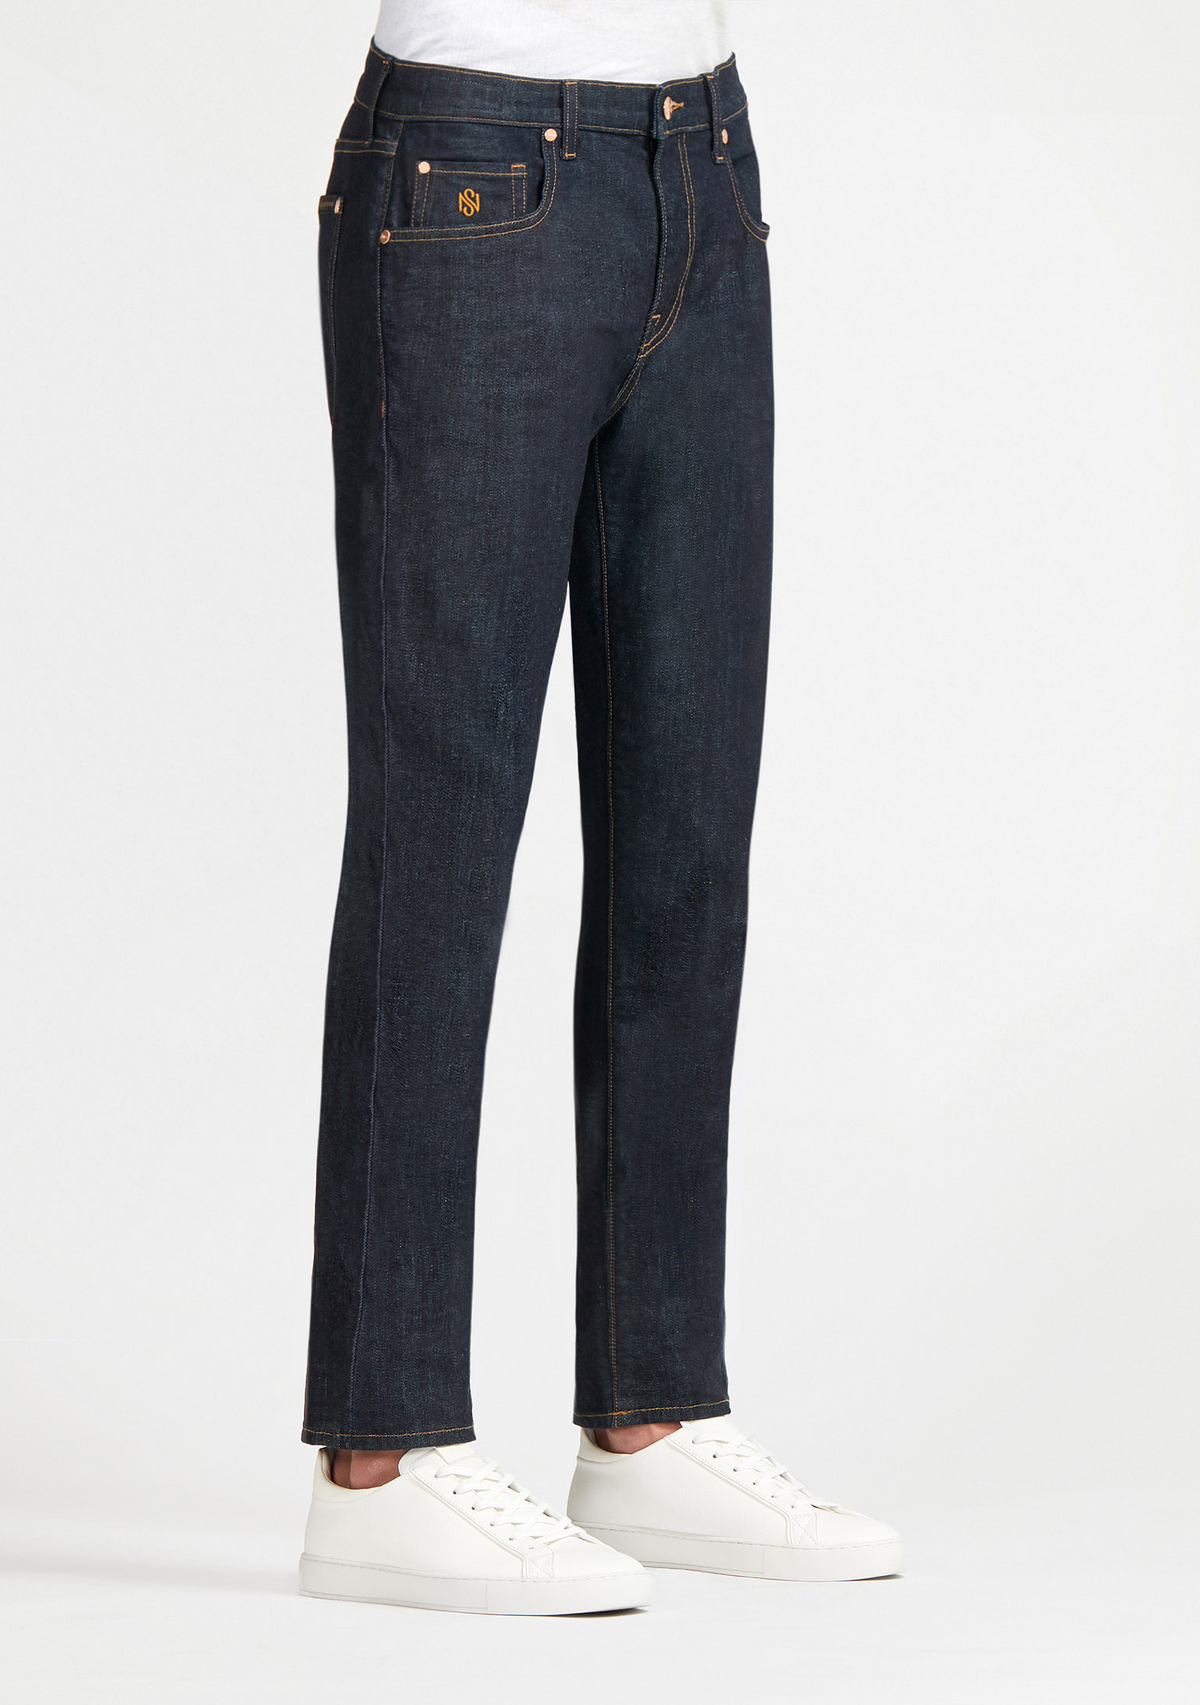 Navy Slim Jeans for Men | SOUL OF NOMAD Men's Denim Brentwood Azimuth